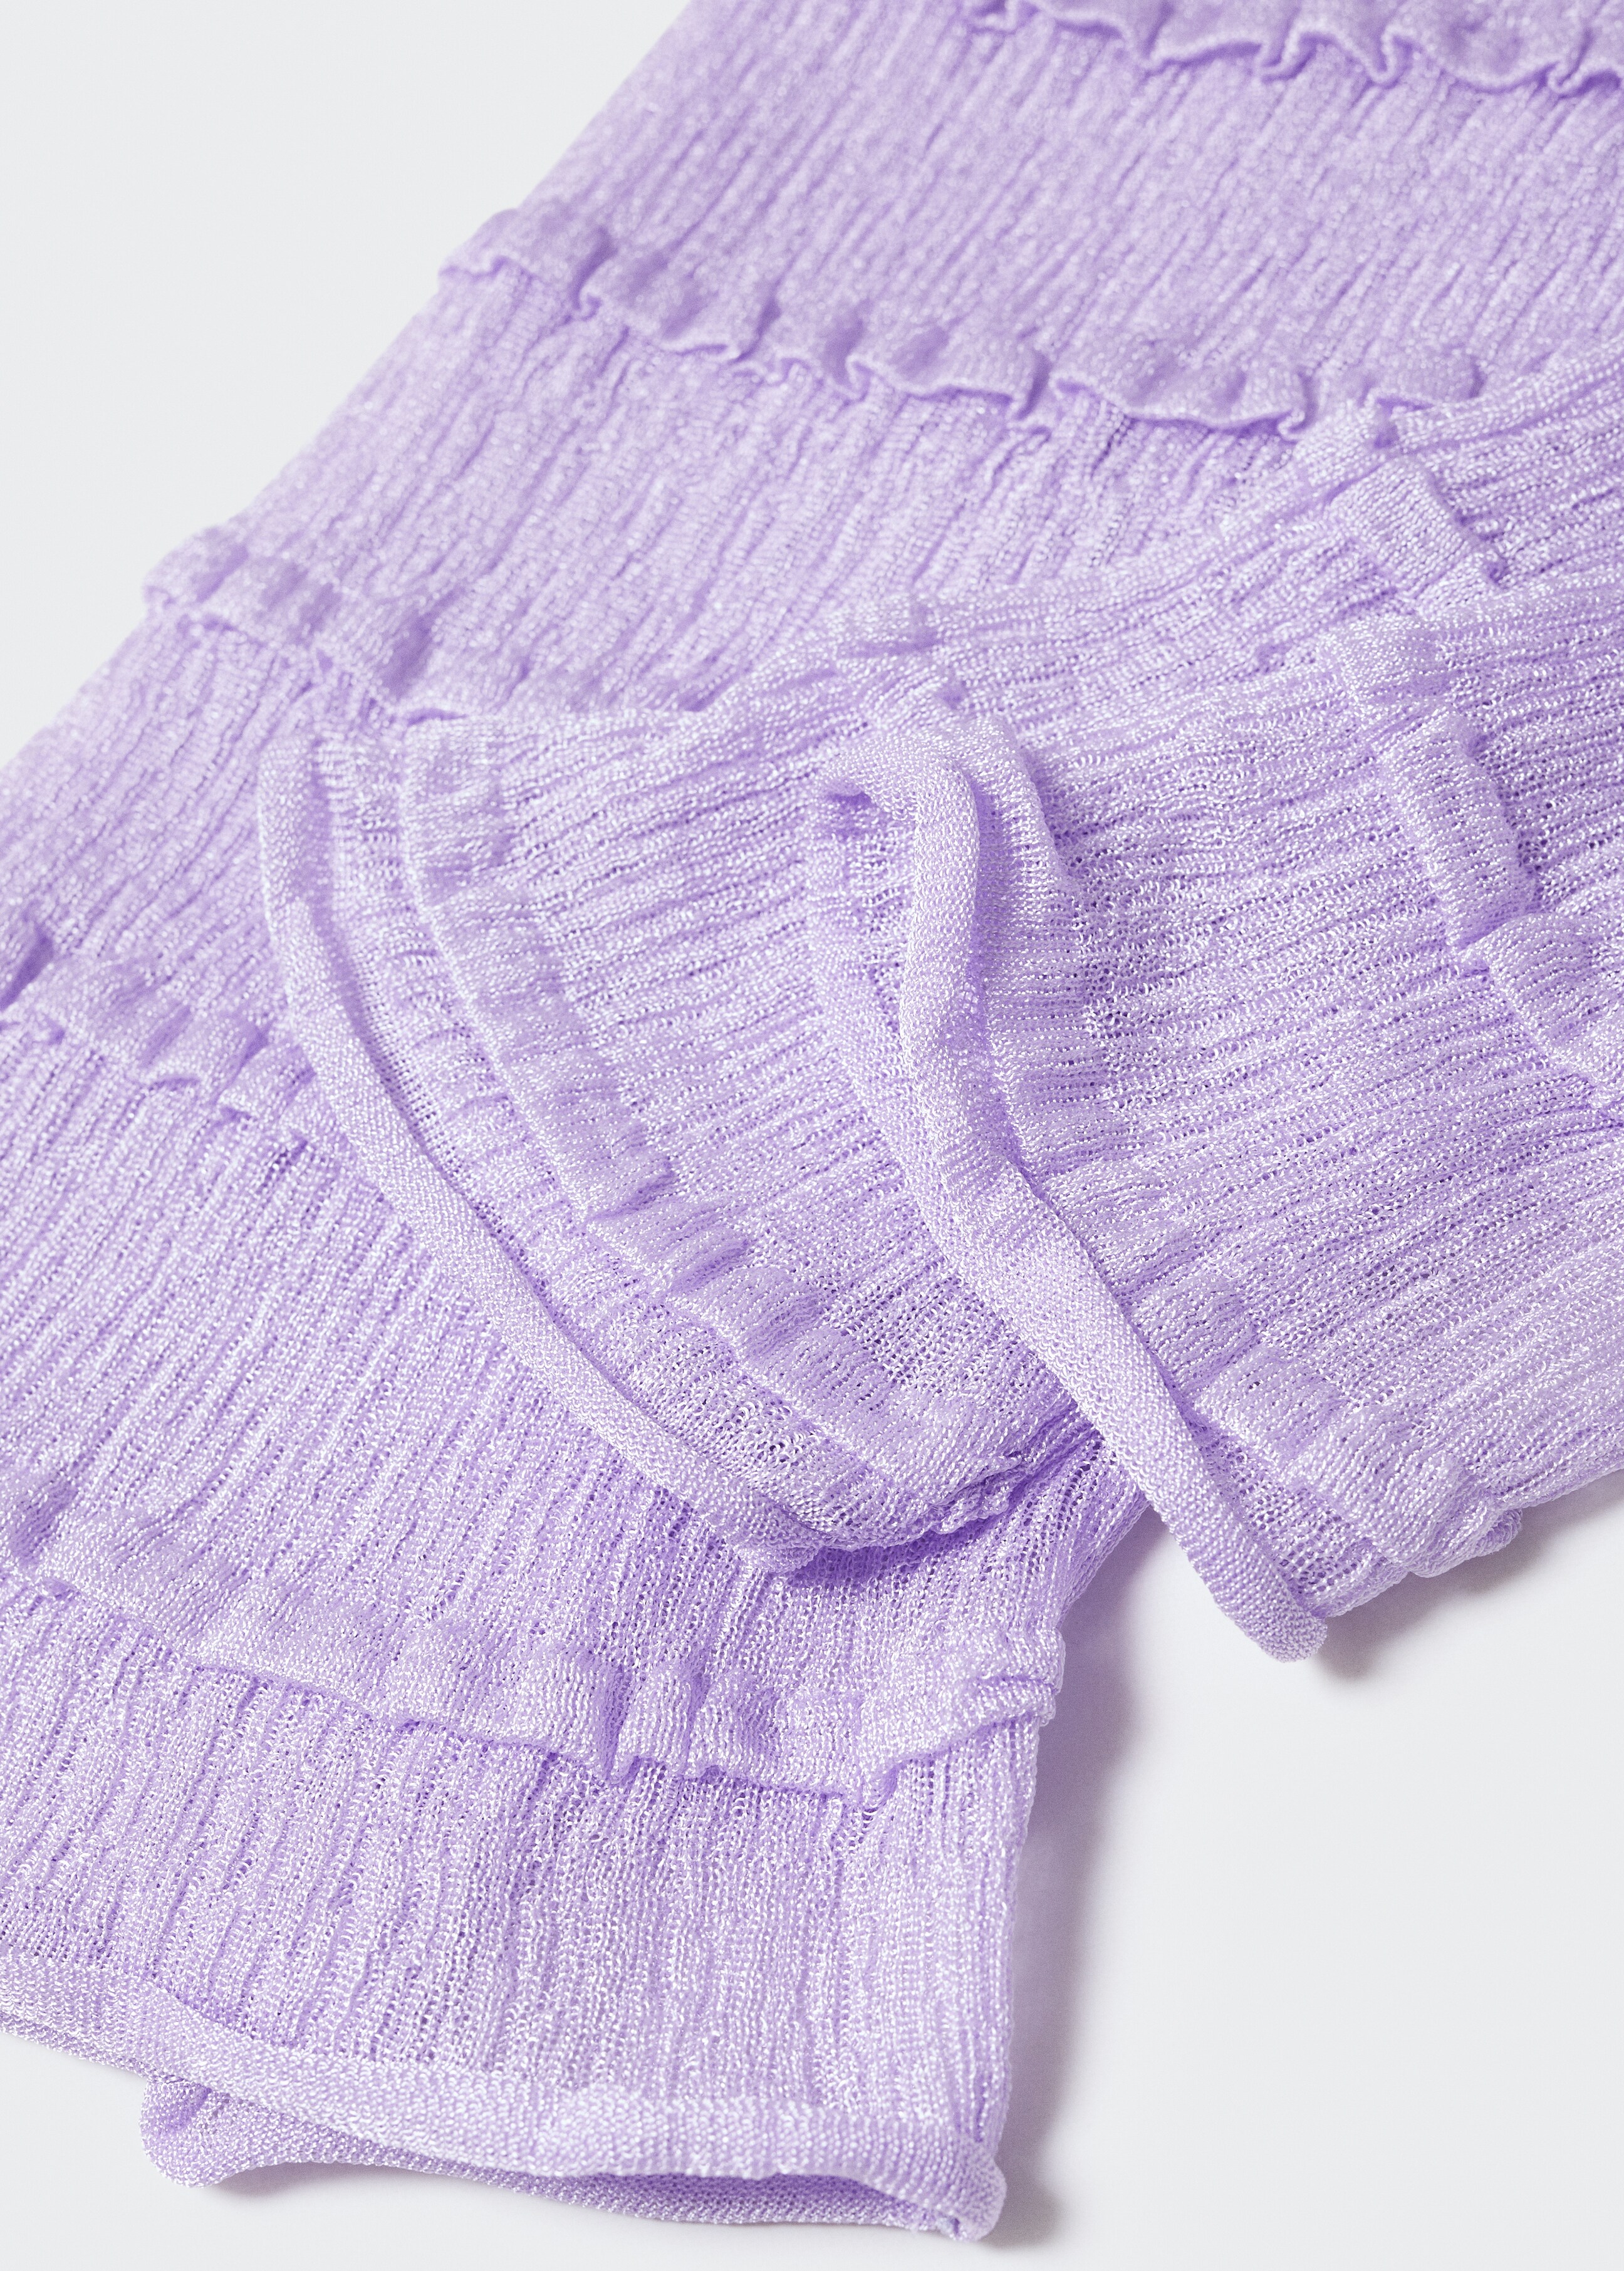 Nabrani teksturirani pulover - Detalji artikla 8